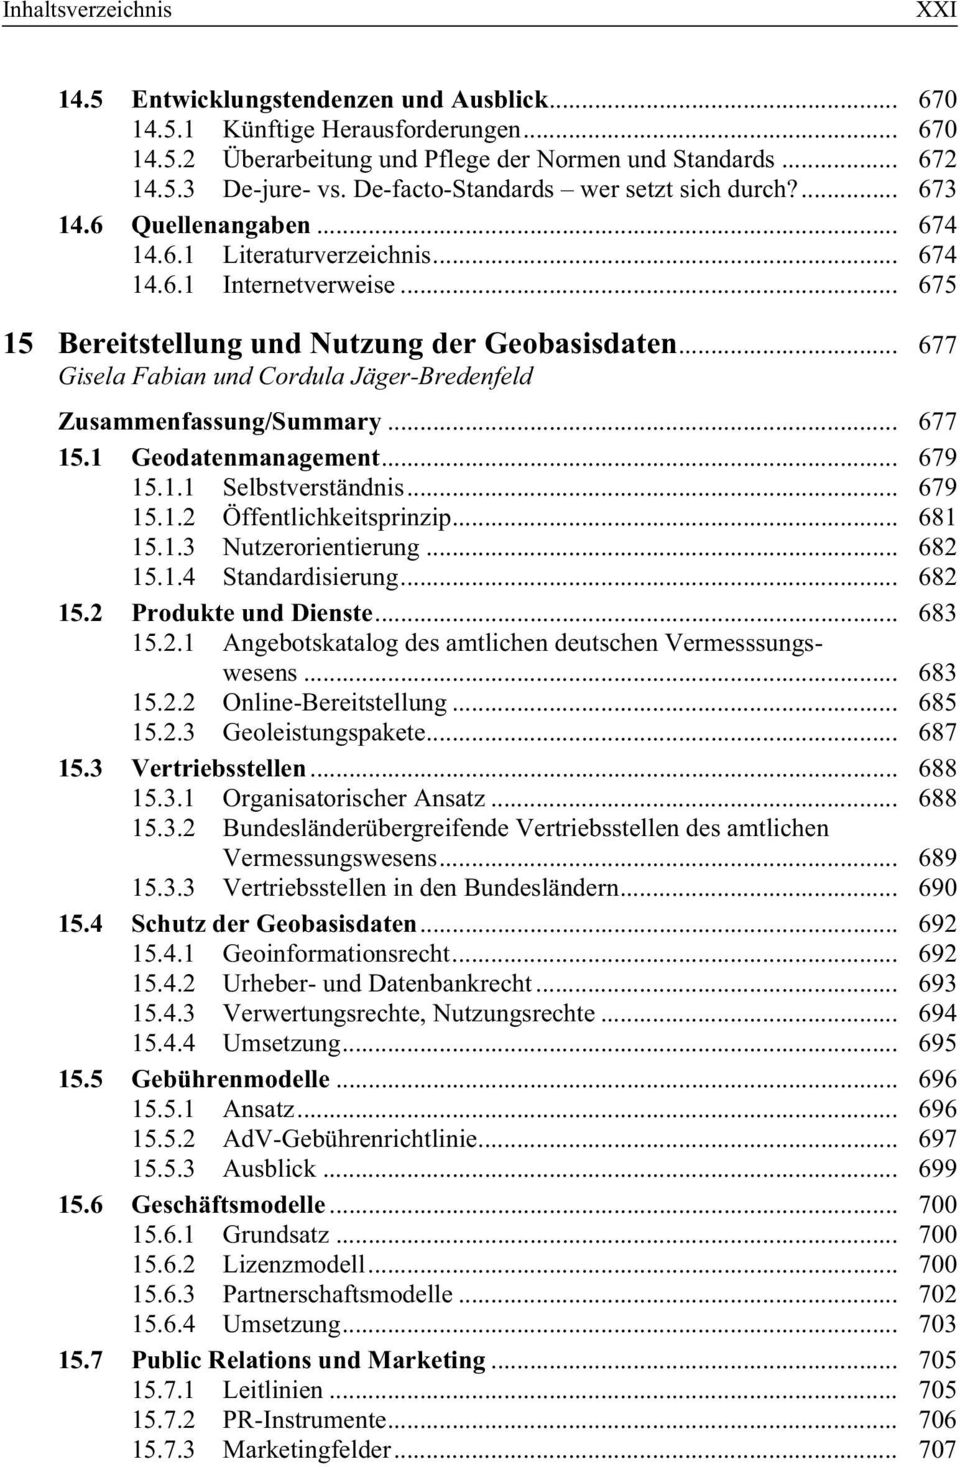 .. 677 Gisela Fabian und Cordula Jäger-Bredenfeld Zusammenfassung/Summary... 677 15.1 Geodatenmanagement... 679 15.1.1 Selbstverständnis... 679 15.1.2 Öffentlichkeitsprinzip... 681 15.1.3 Nutzerorientierung.